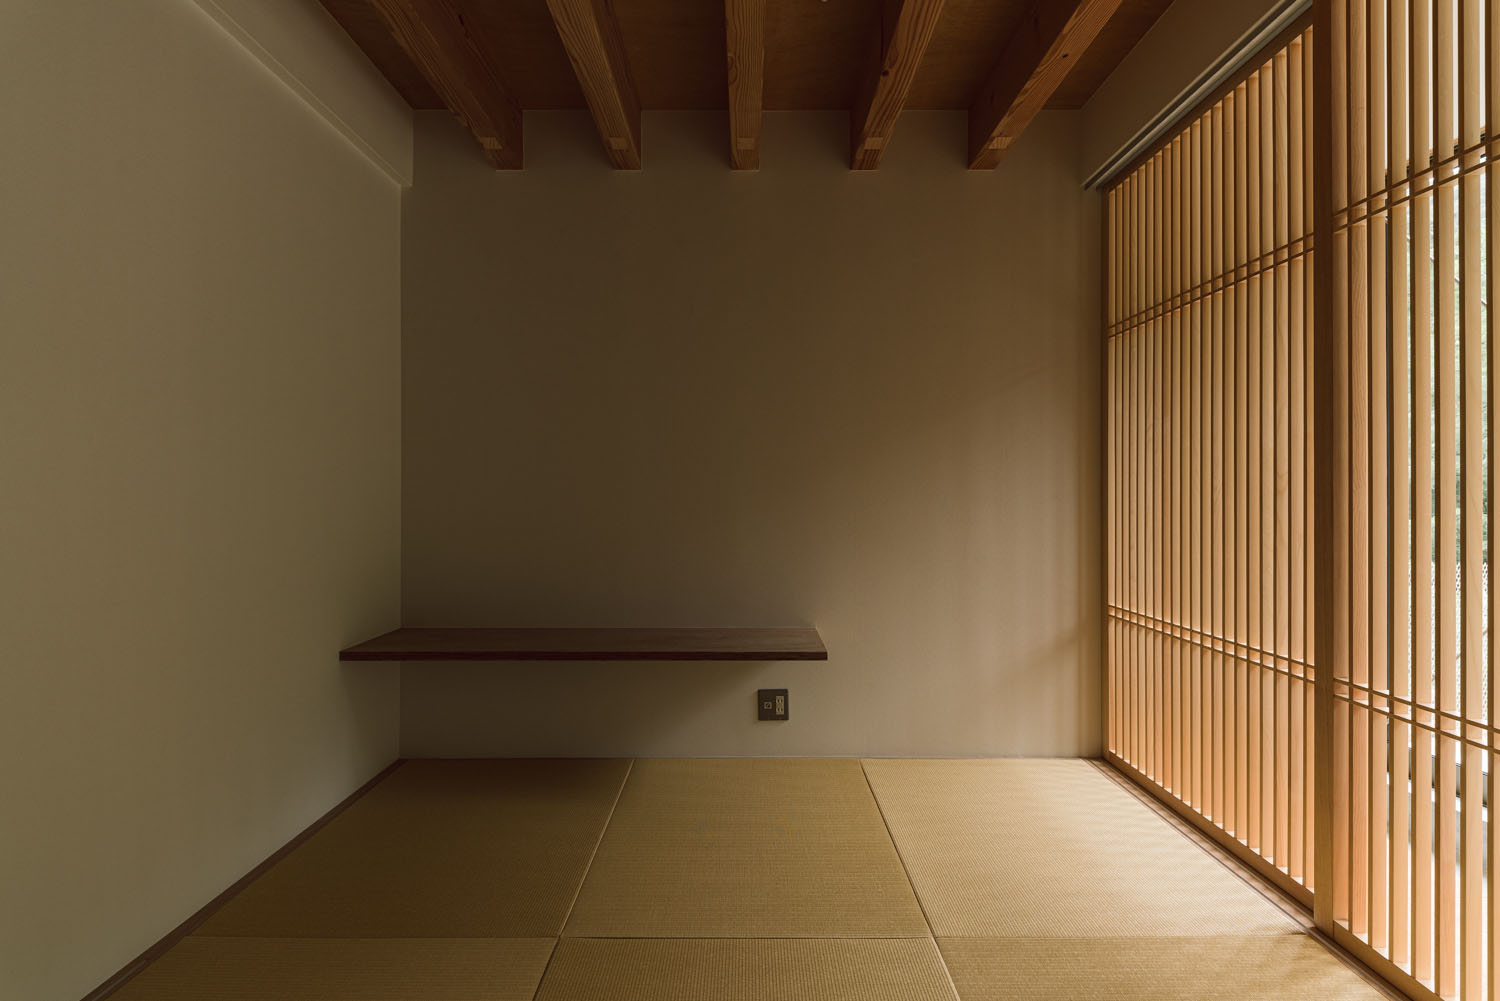 梁見せ天井で、格子戸がある琉球畳の和室・デザイン住宅